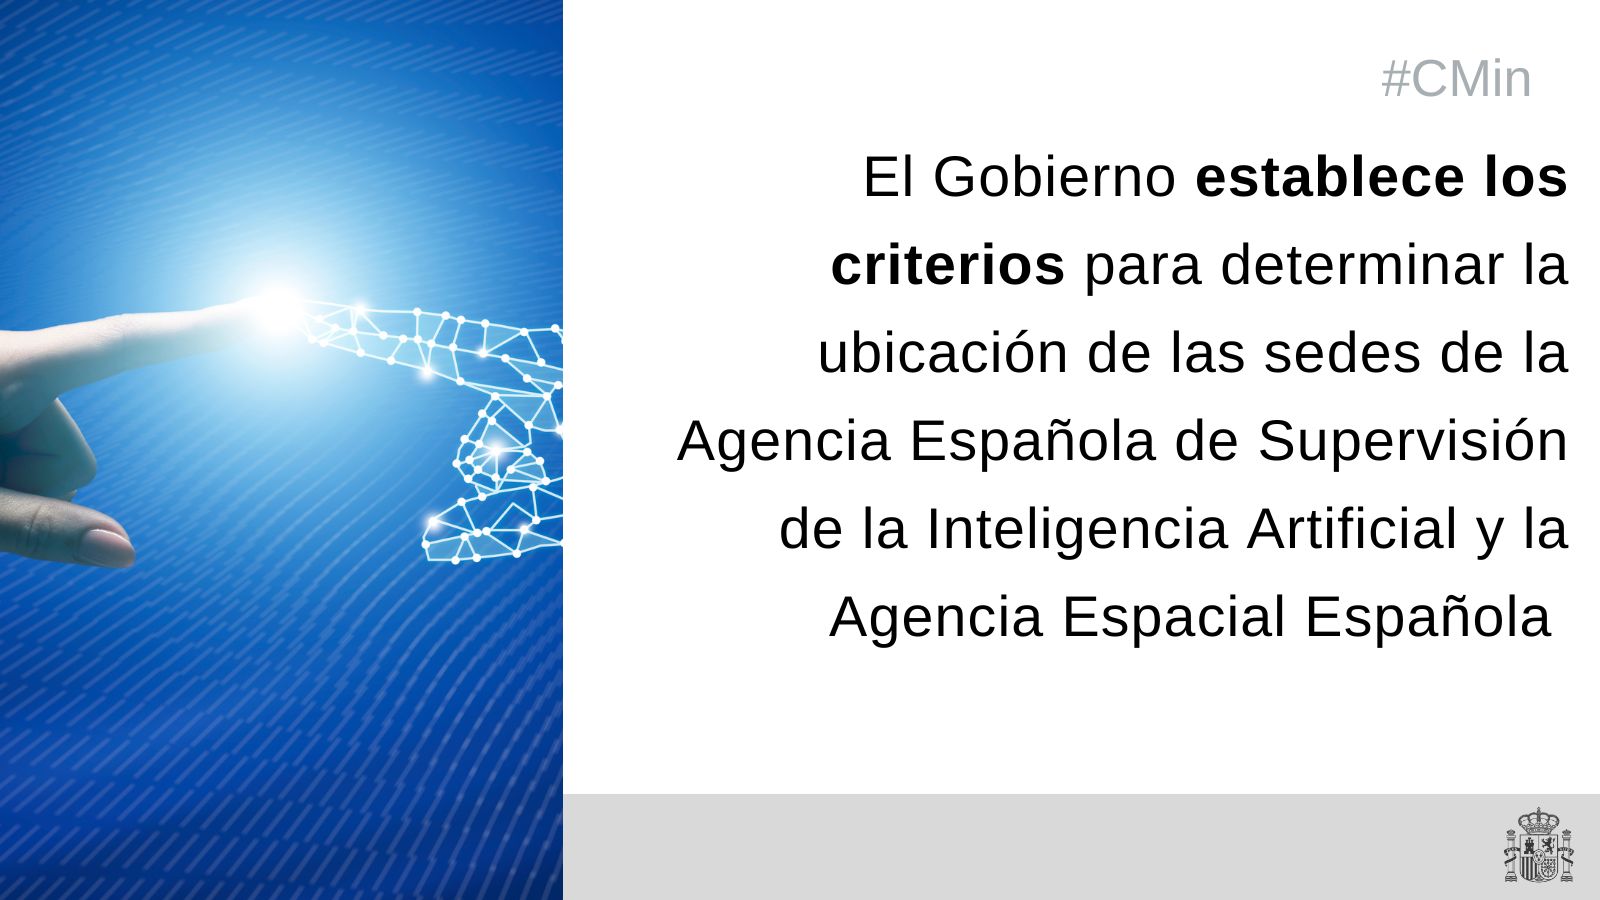 El Gobierno establece los criterios para determinar las sedes de la Agencia Española de Supervisión de la Inteligencia Artificial y la Agencia Espacial Española